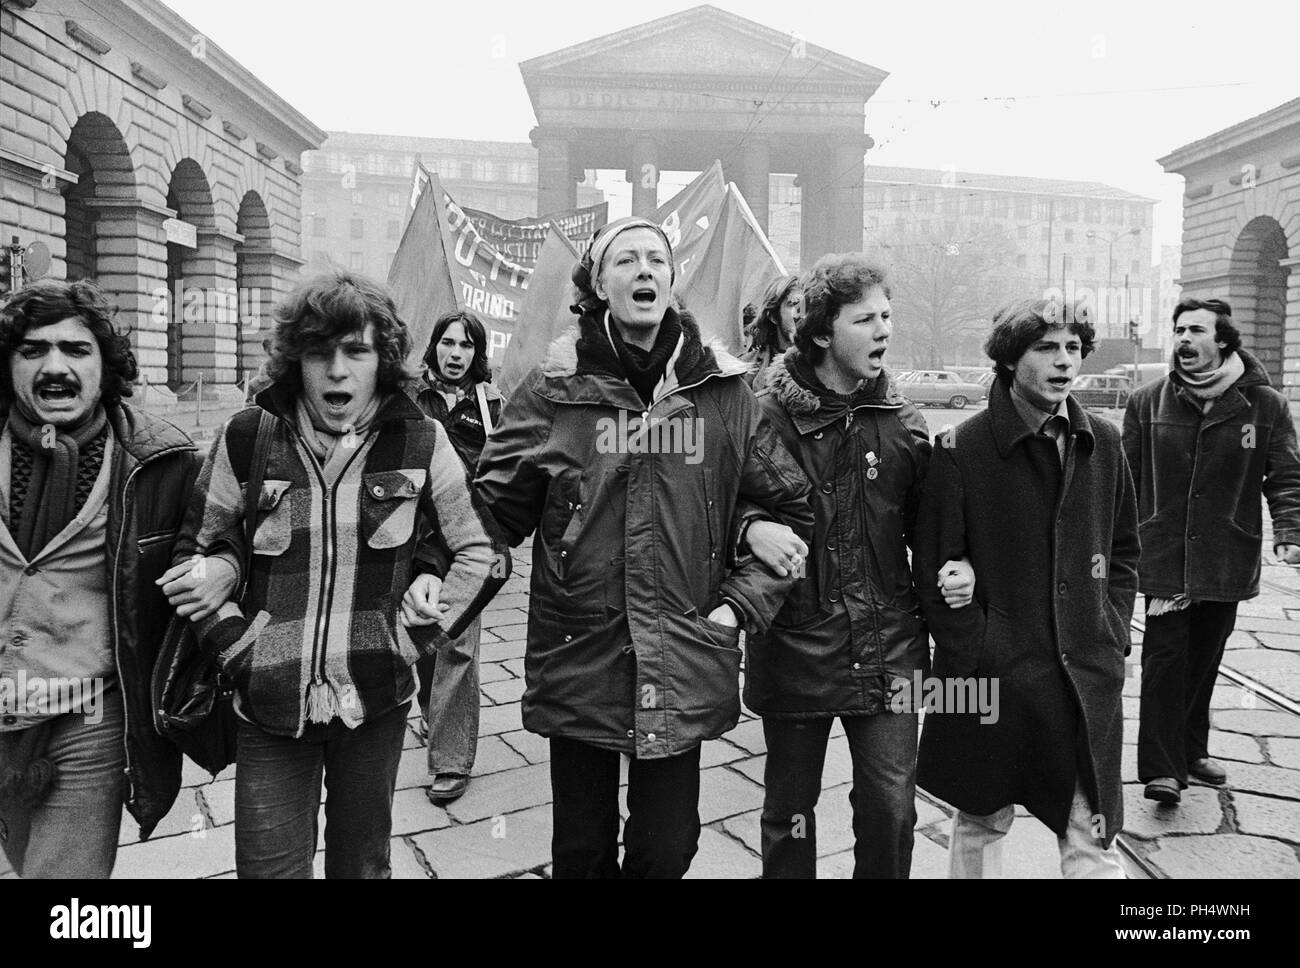 Il grande inglese attrice Vanessa Redgrave è sempre stato politicamente impegnato, qui a Milano (Italia) nel gennaio 1978 partecipa a una dimostrazione durante la comunità internazionale di marzo organizzato dalla tomba (Trozkista ispirato) per la difesa dei diritti dei lavoratori. Foto Stock